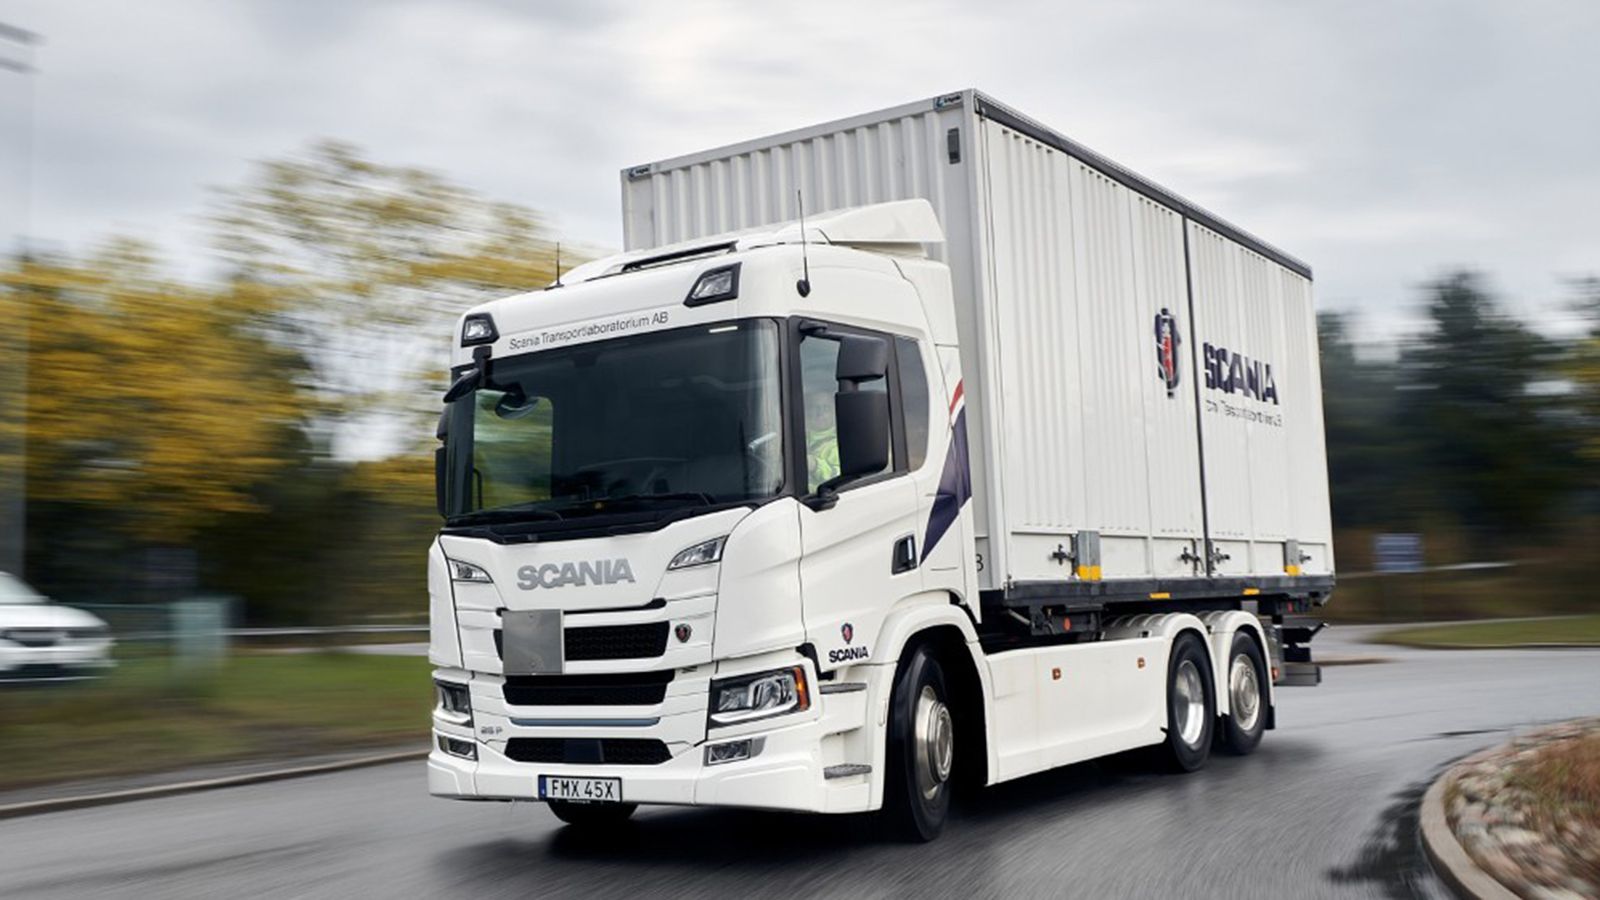 Ήδη από φέτος θα ξεκινήσει η αντικατάσταση των οχημάτων της μεταφορικής Scania Transportlab με αμιγώς ηλεκτρικά.